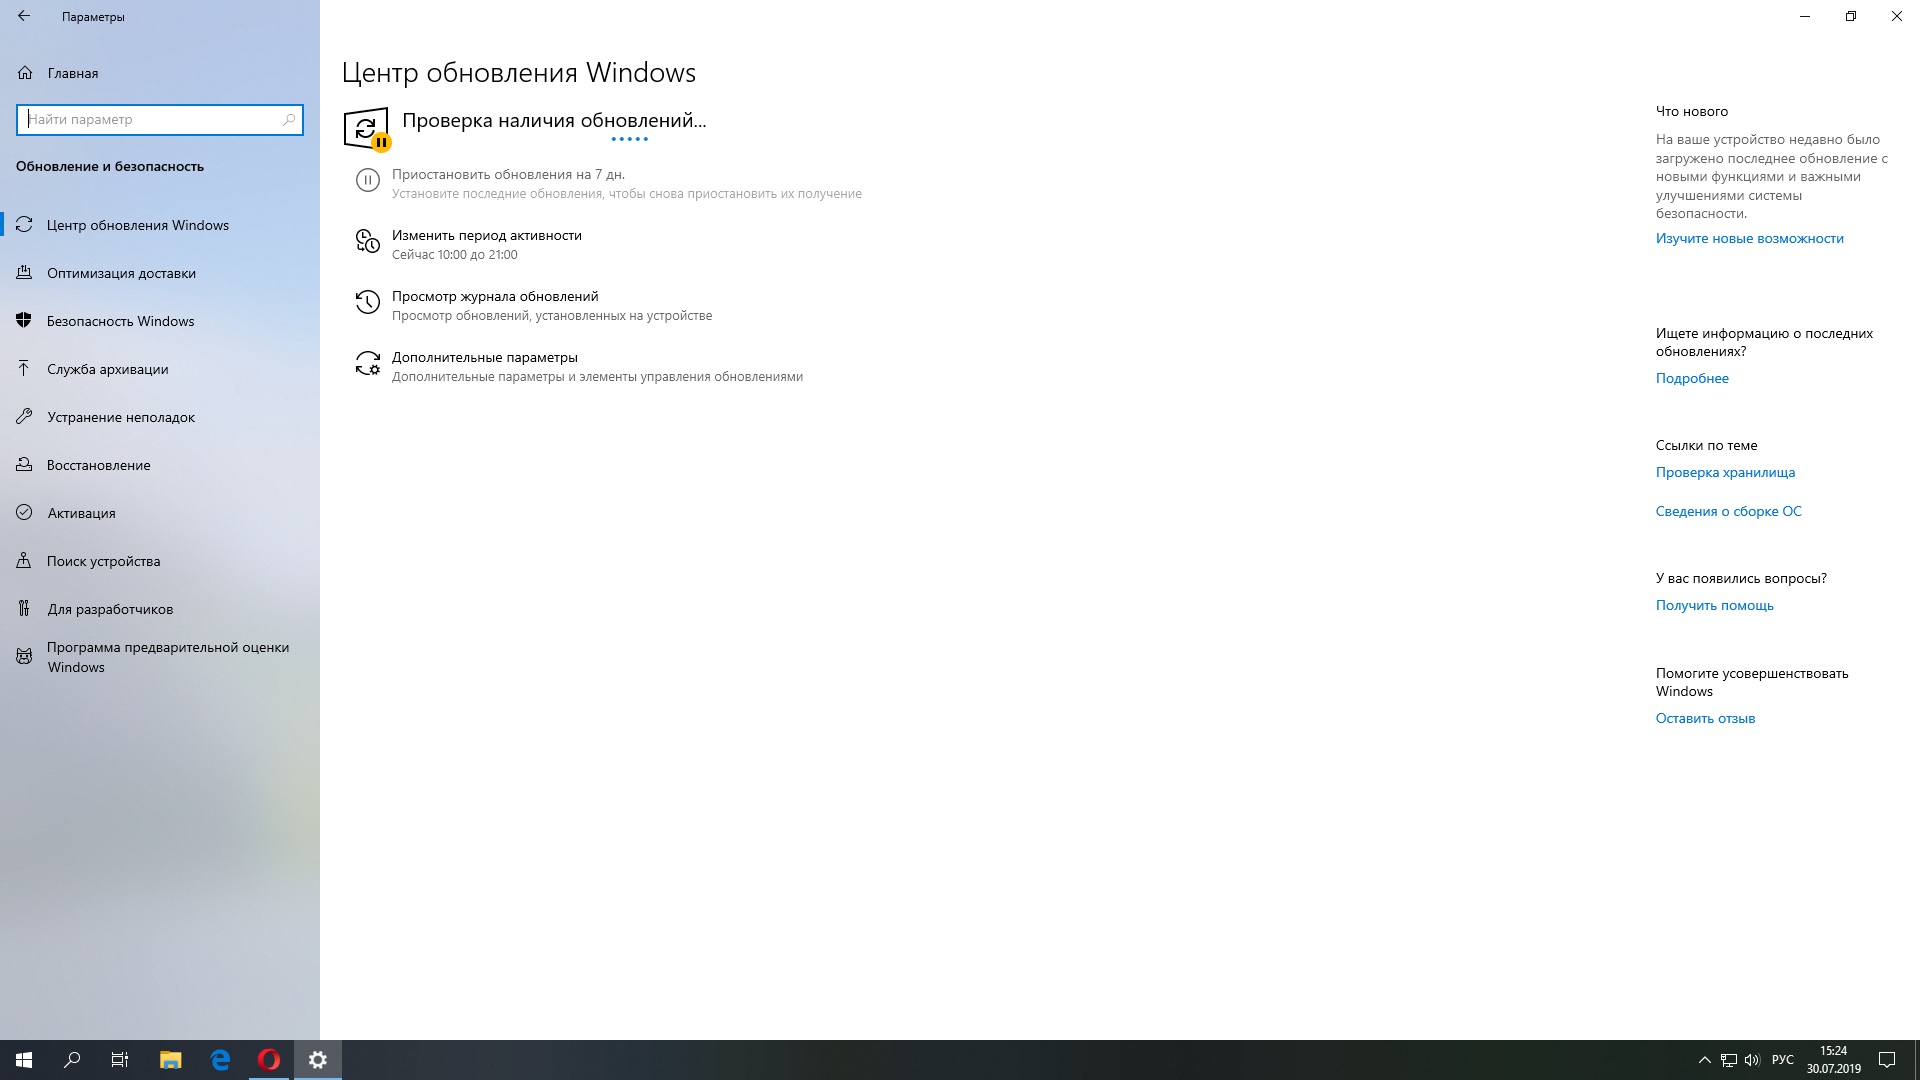 Каталог обновлений microsoft windows 10. Обновления приостановлены на 7 дней.